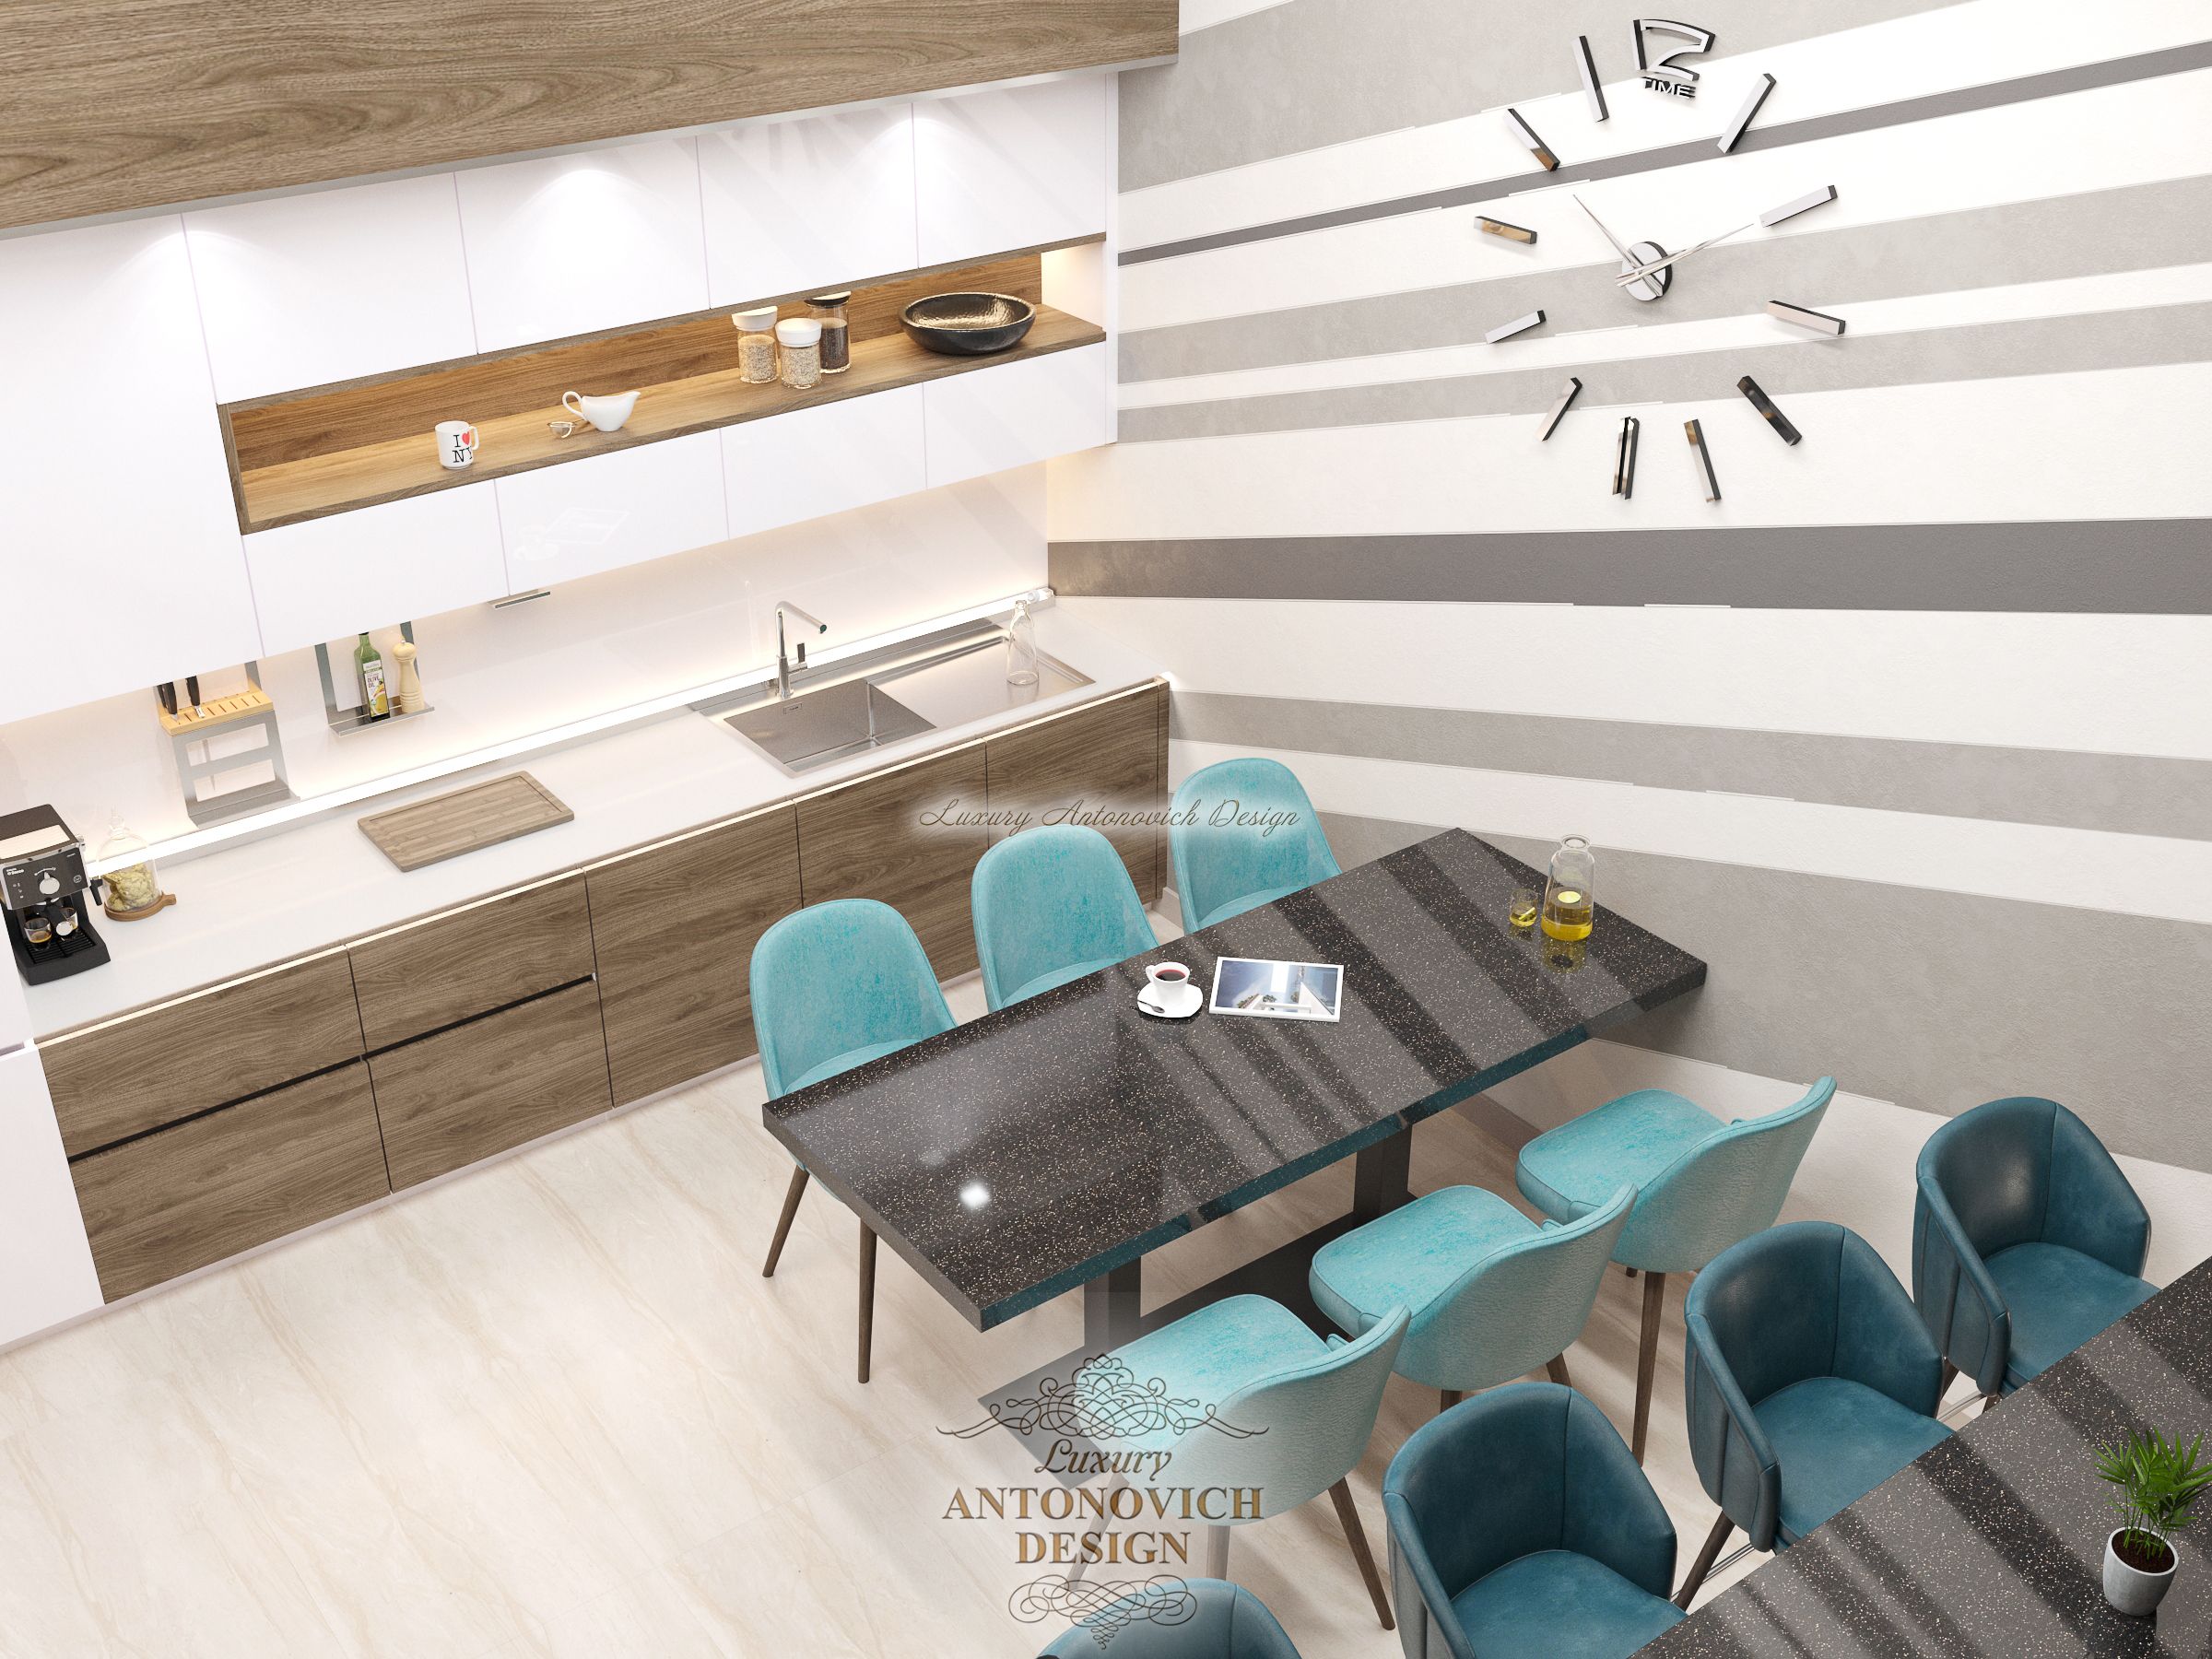 Интерьер Кухни 6 офиса, Antonovych Design